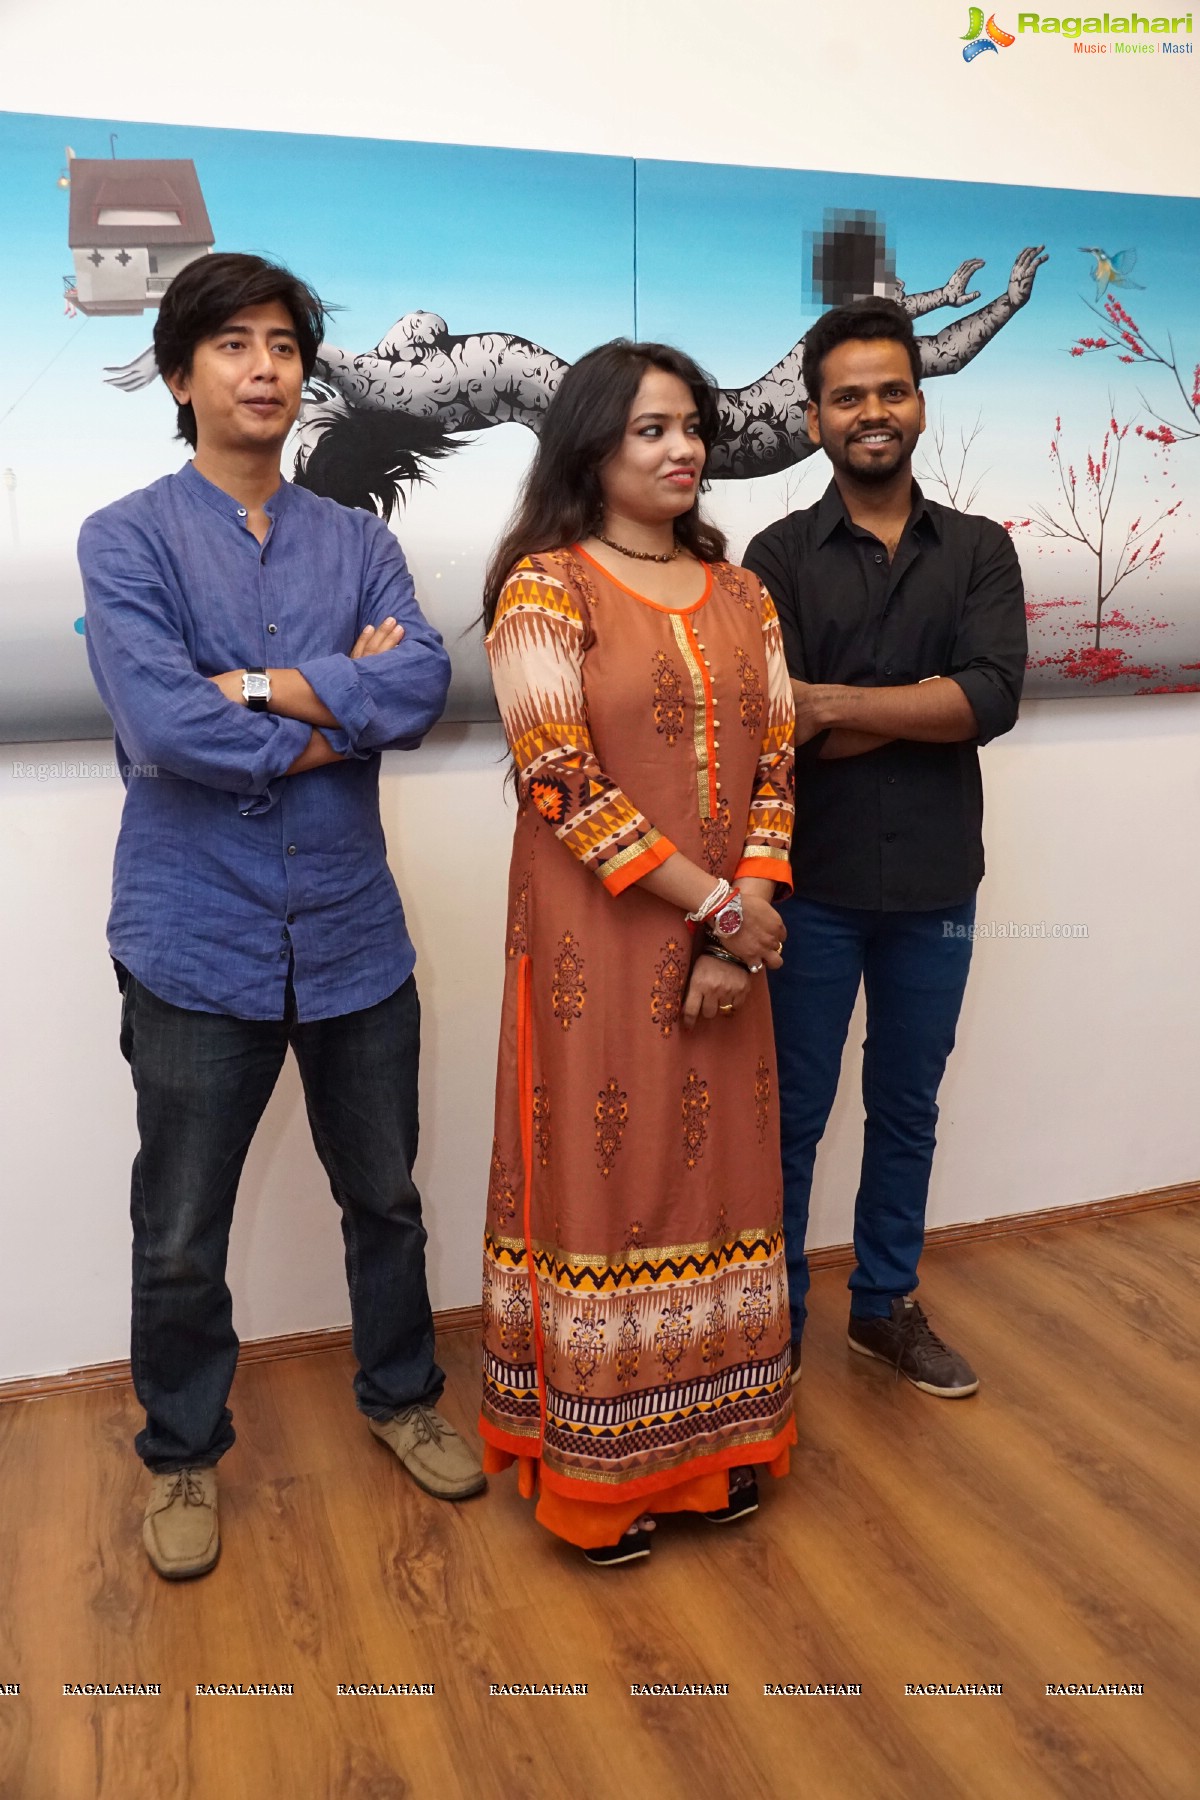 Topos of Imagination with Mrinmoy Debbarma, Purnna Behera and Swayamprabha Parida at Kalakriti Art Gallery